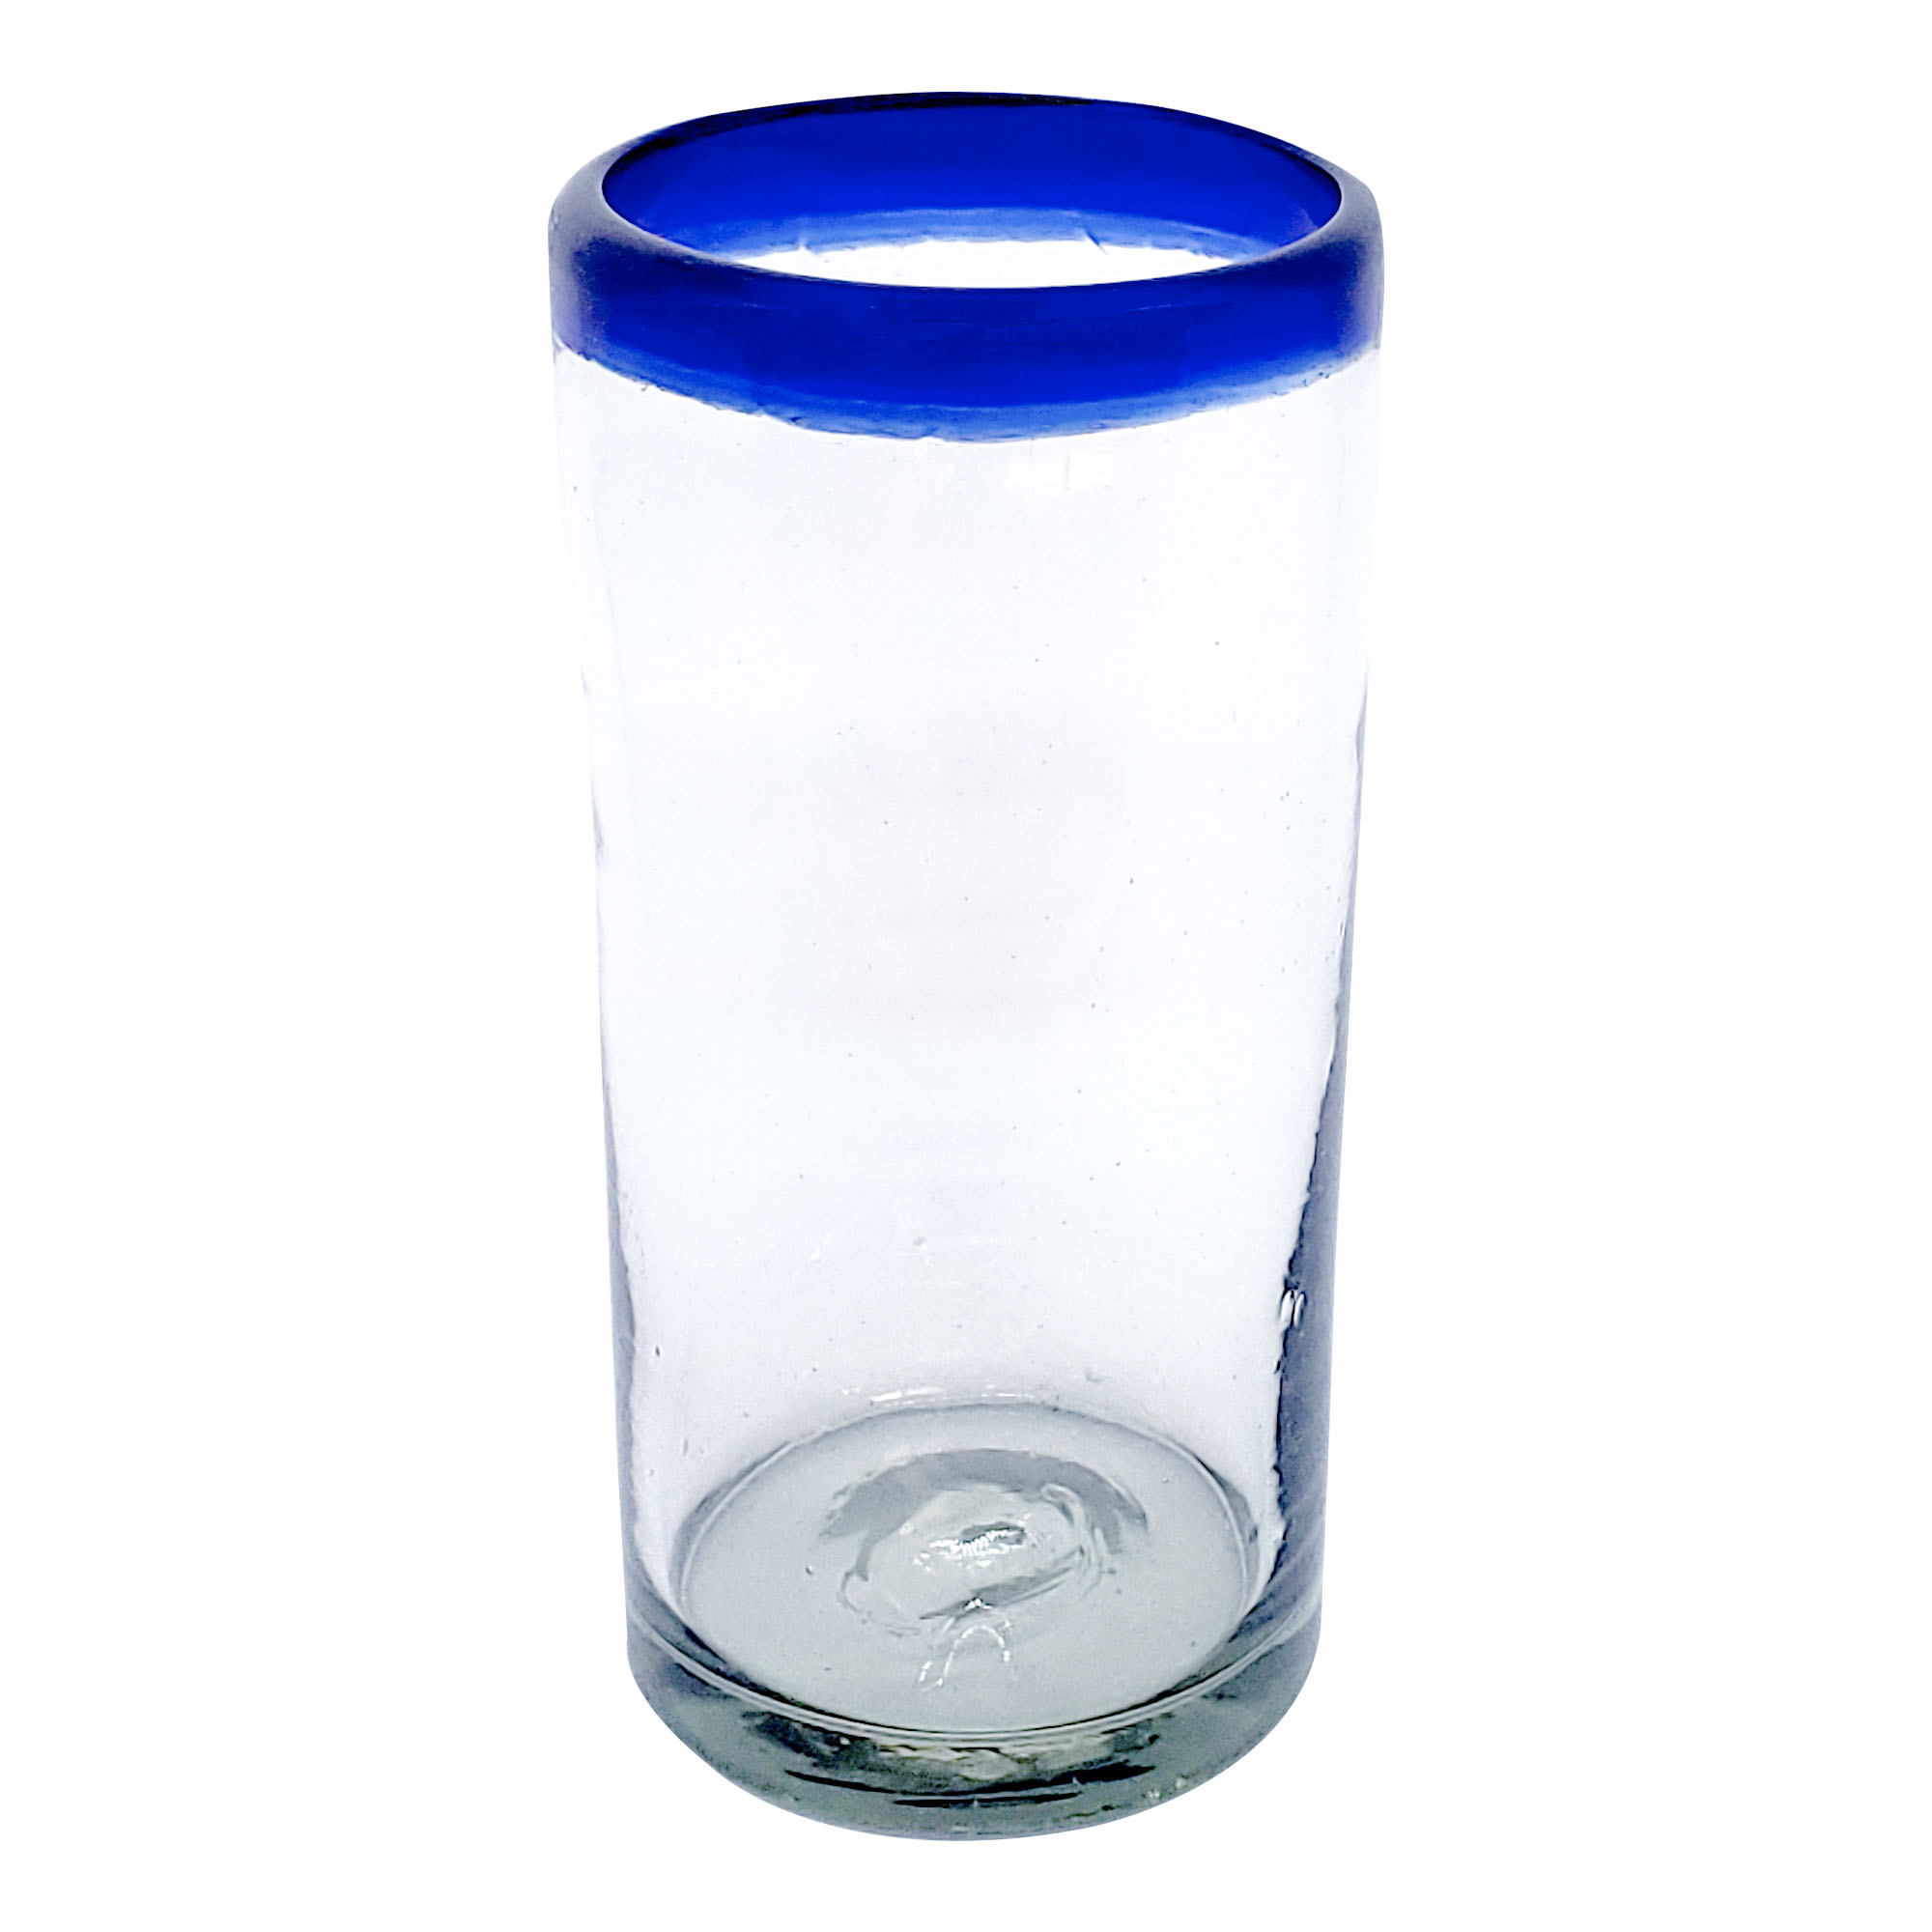 VIDRIO SOPLADO / vasos Jumbo con borde azul cobalto, 20 oz, Vidrio Reciclado, Libre de Plomo y Toxinas